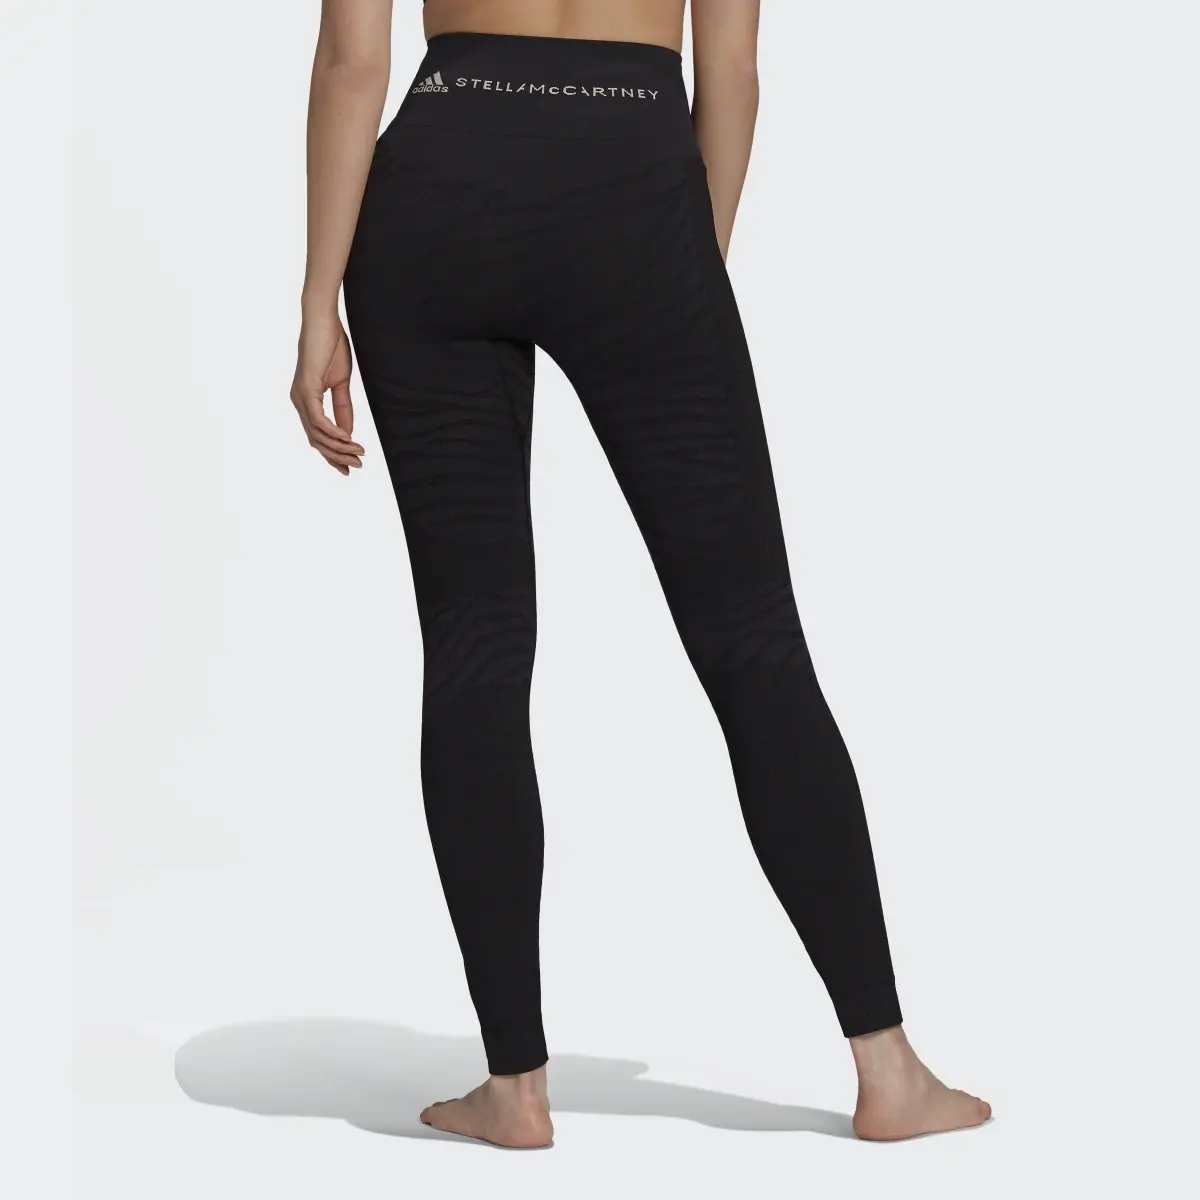 Adidas by Stella McCartney Seamless Yoga Tights. 3